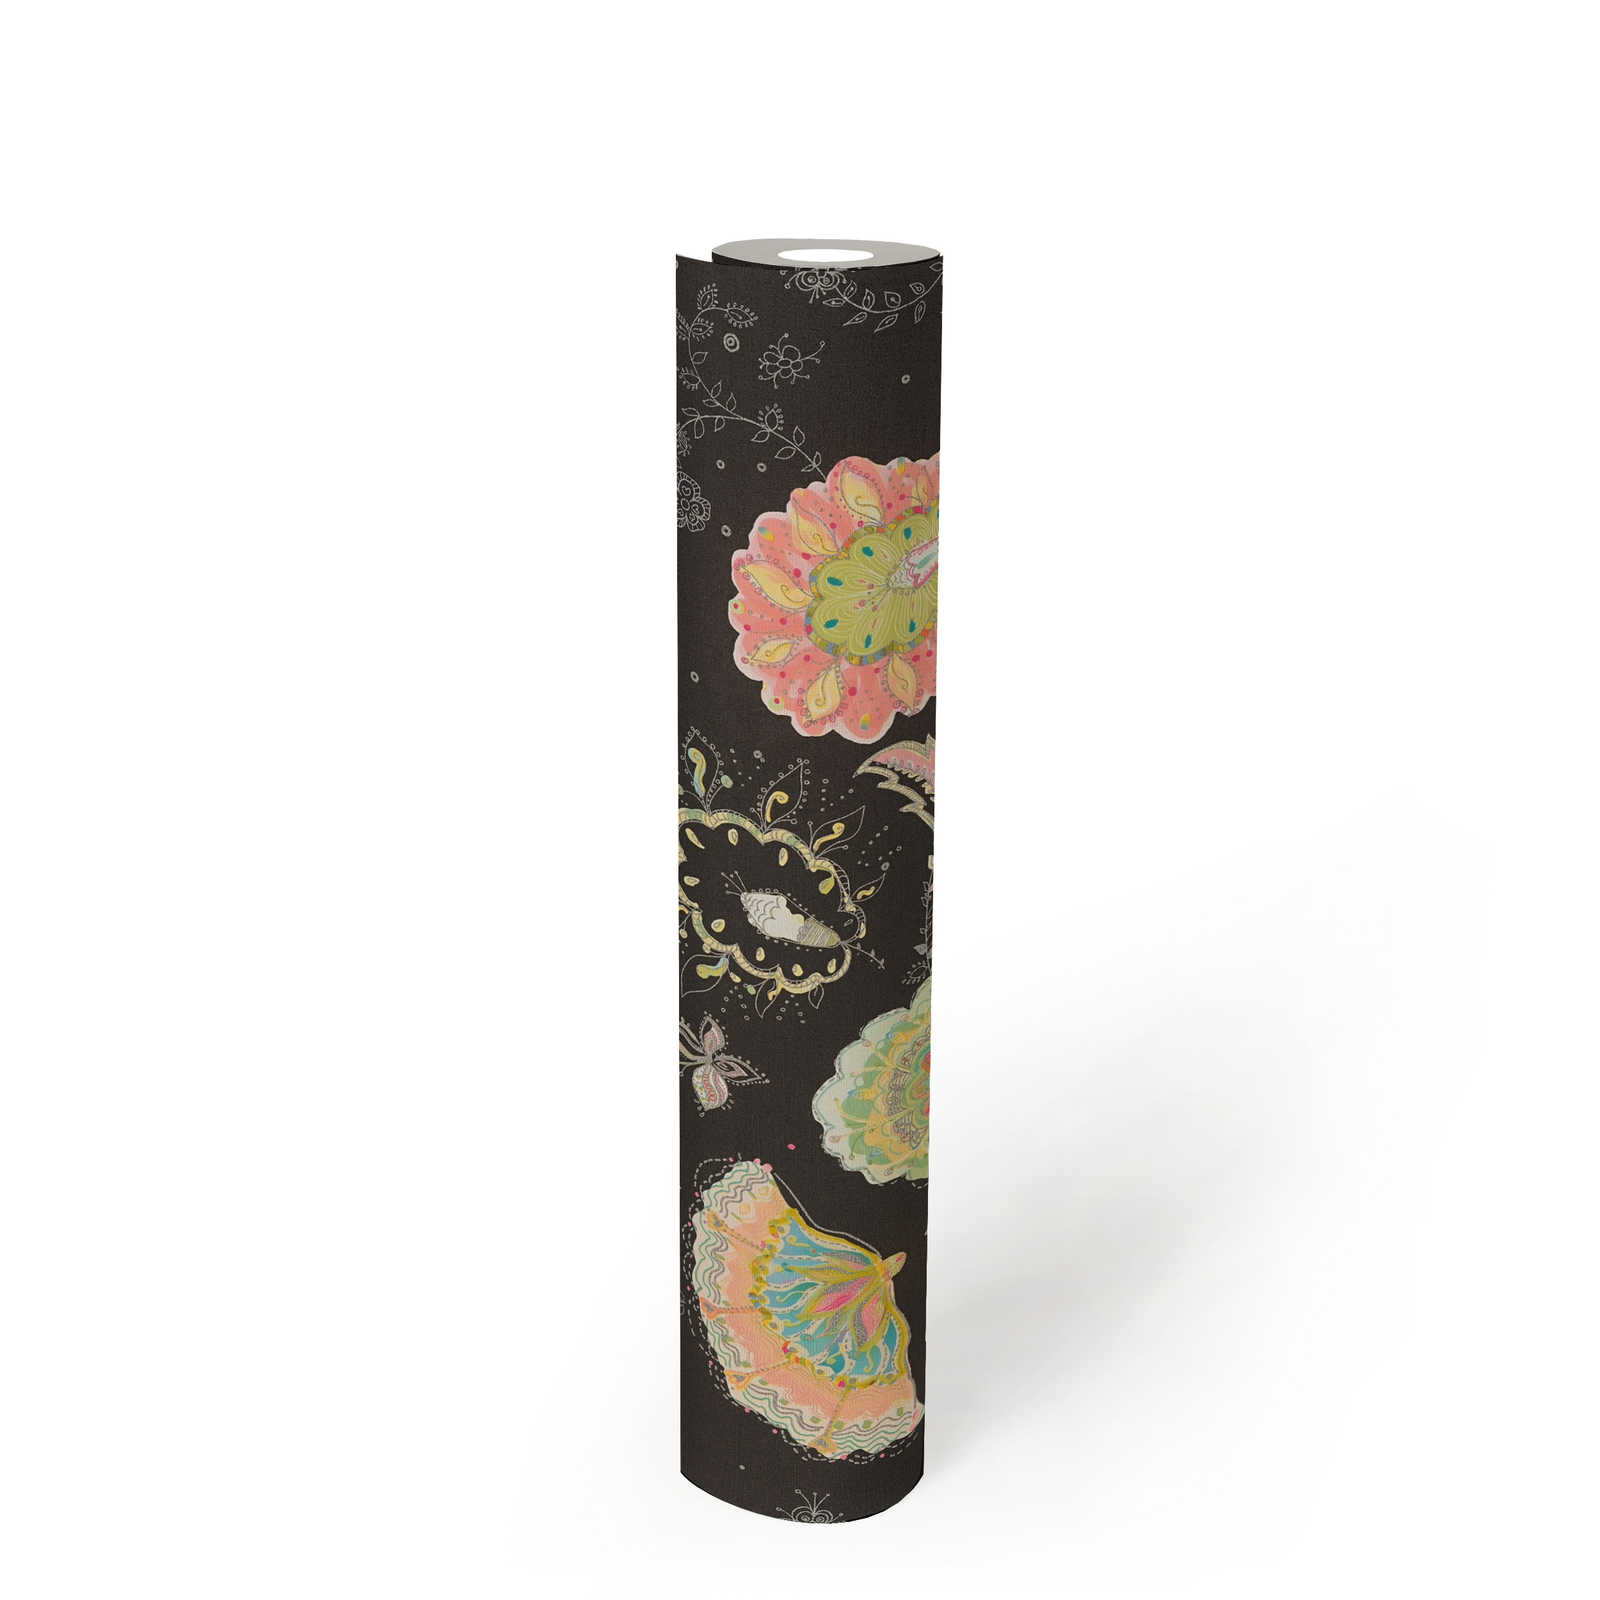             Vliestapete mit floralem Muster und leichter Glanzstruktur – Schwarz, Grün, Bunt
        